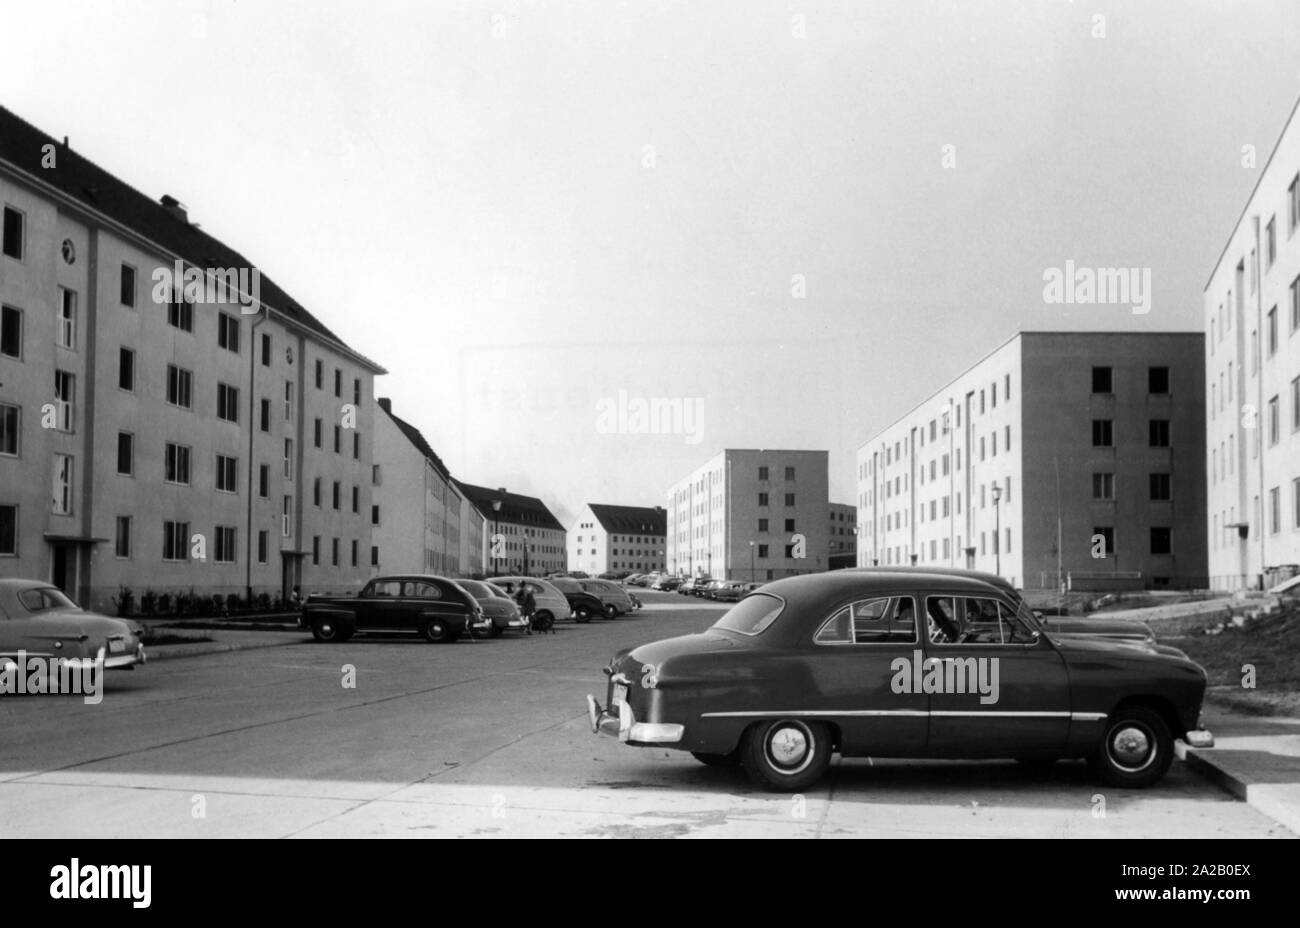 La figura mostra una vista del complesso residenziale delle forze USA in Vogelweh vicino a Kaiserslautern. Essi sono parte di Kaiserslautern Comunità Militare, la più grande base militare degli Stati Uniti al di fuori degli Stati Uniti. Di fronte all'appartamento edifici sono macchine parcheggiate. Foto Stock